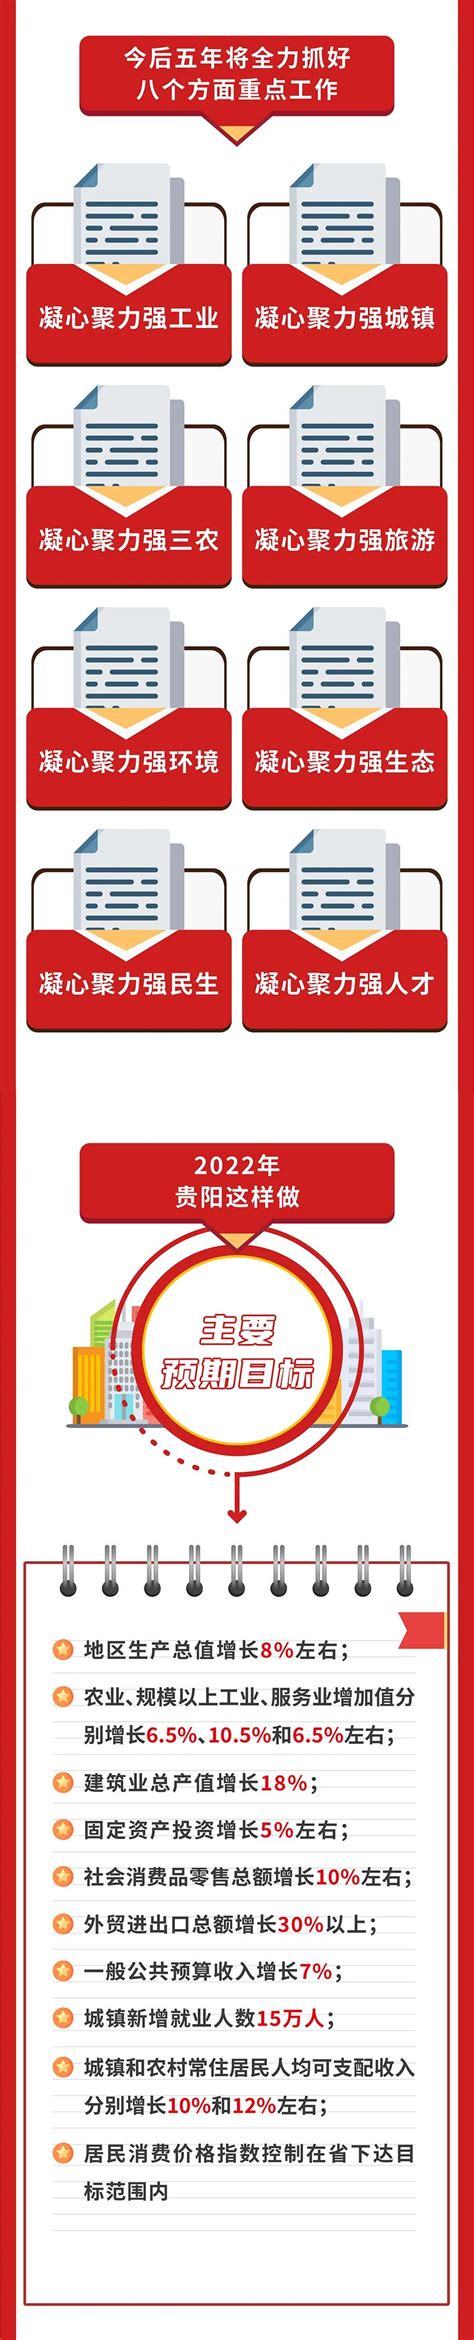 贵阳市白云区人民政府网站评估成绩进步明显-南京智政大数据科技有限公司